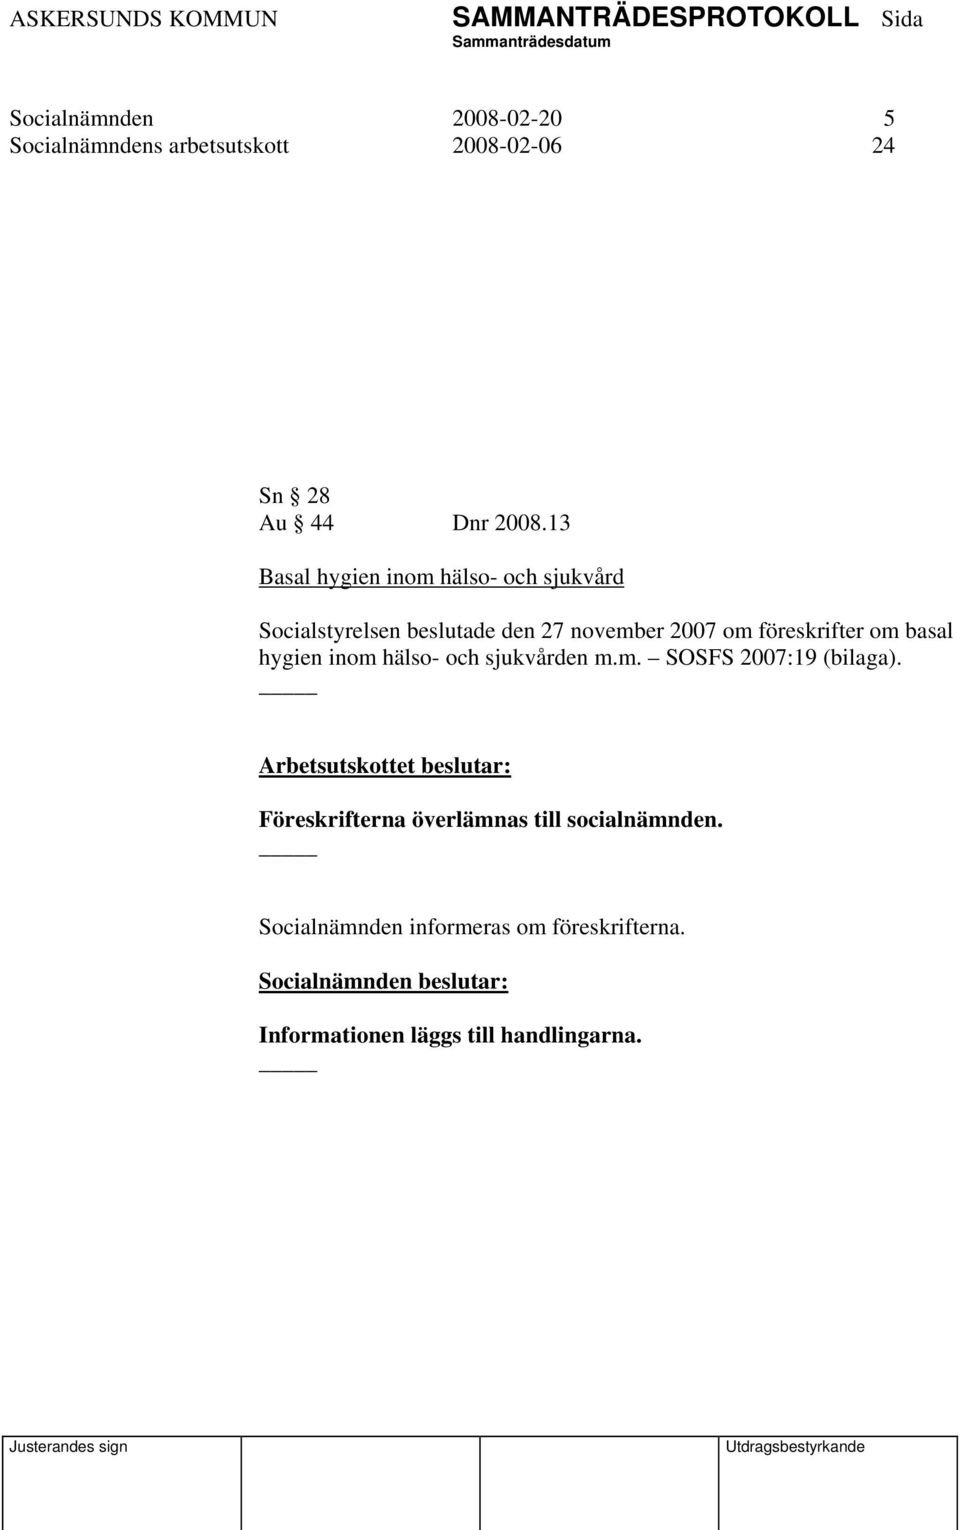 om basal hygien inom hälso- och sjukvården m.m. SOSFS 2007:19 (bilaga).